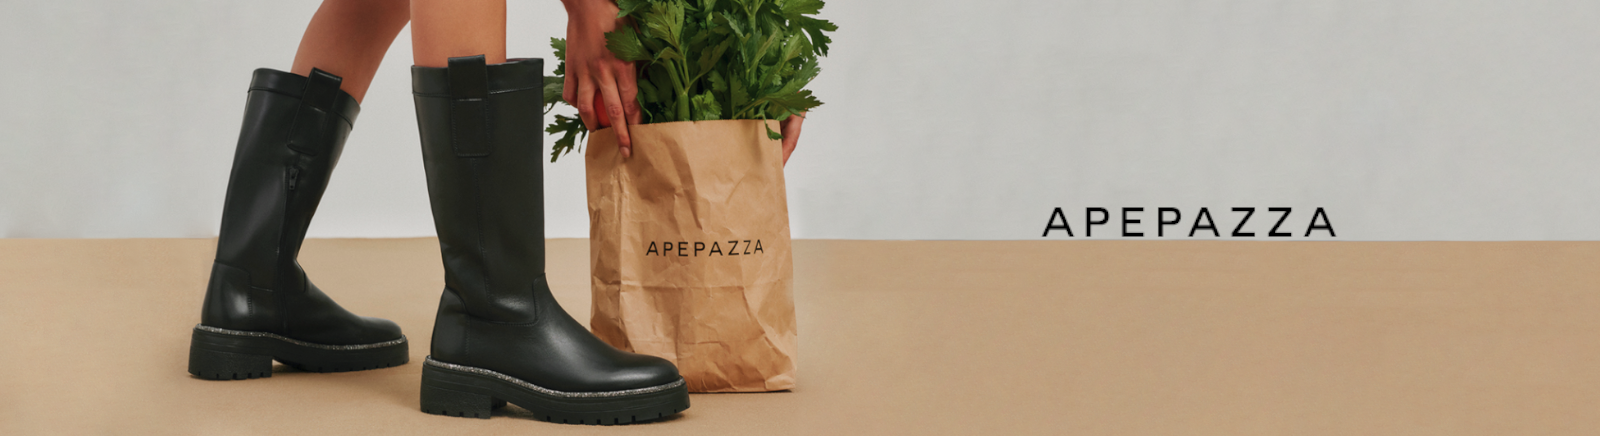 Juppen: Apepazza Pumps Schuhe online kaufen online shoppen